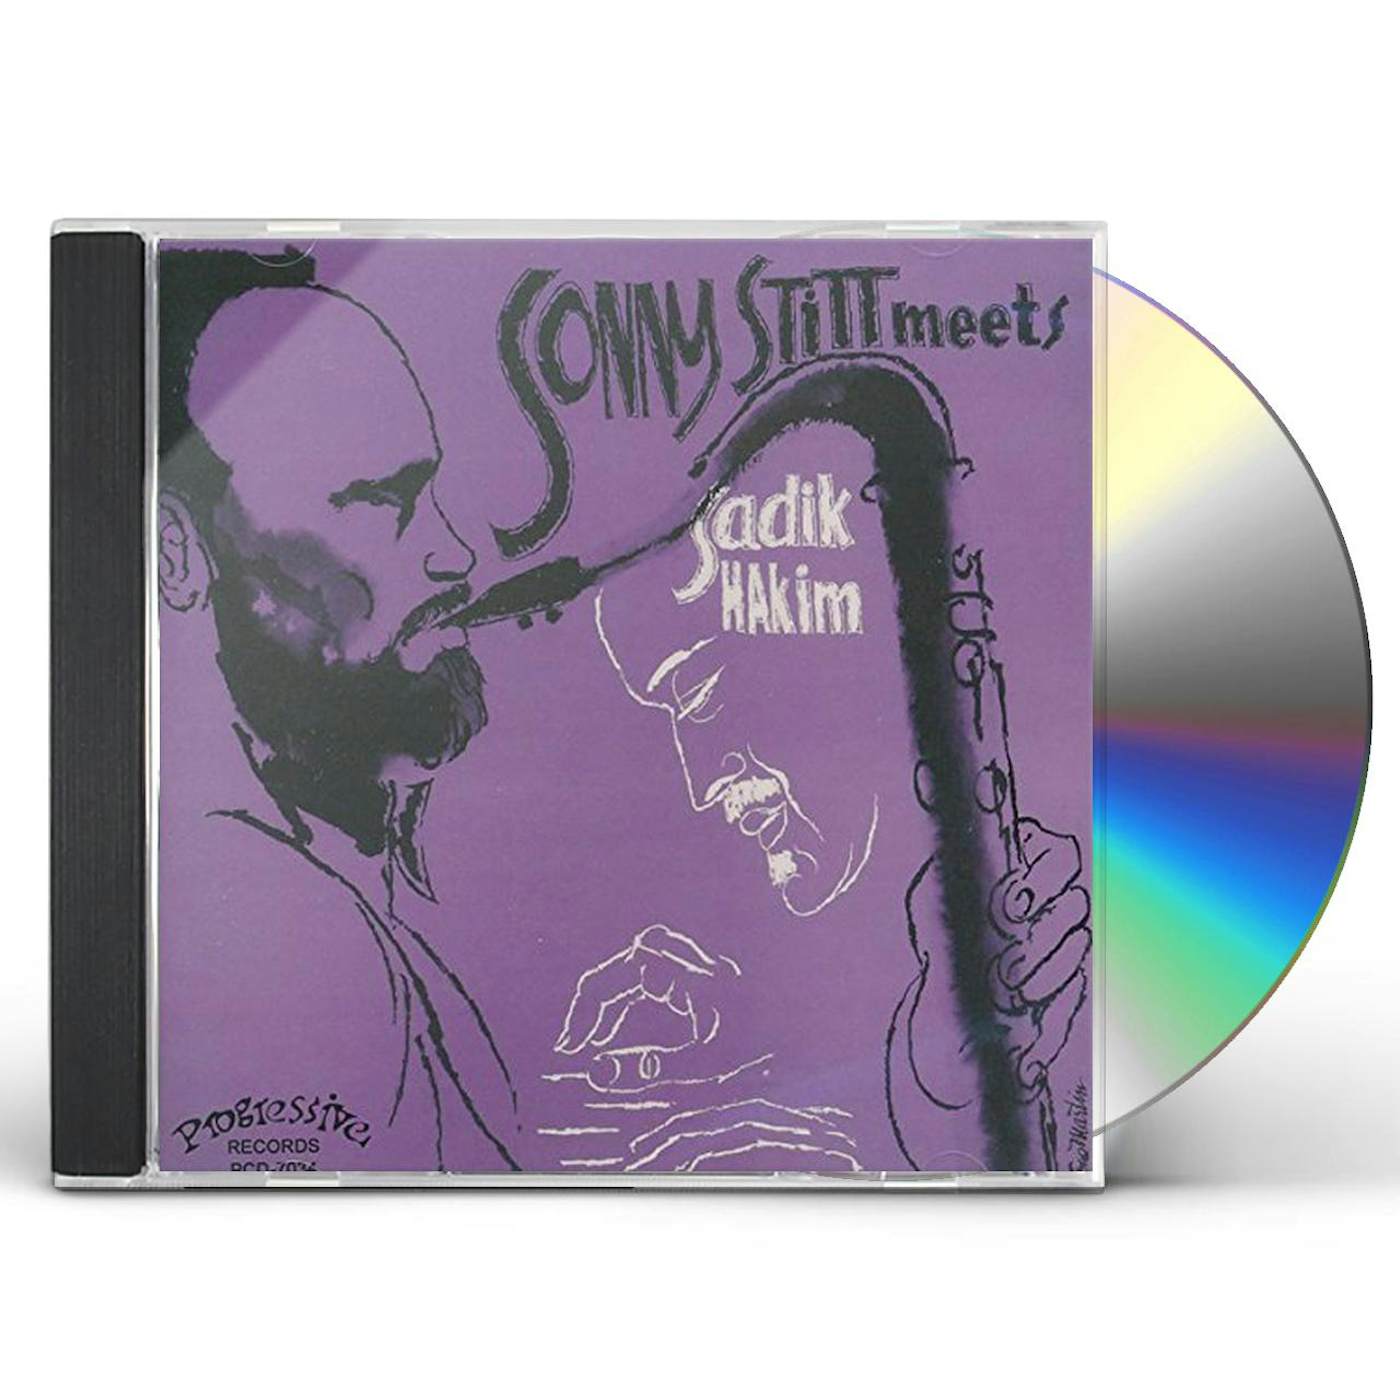 Sonny Stitt MEETS SADIK HAKIM CD